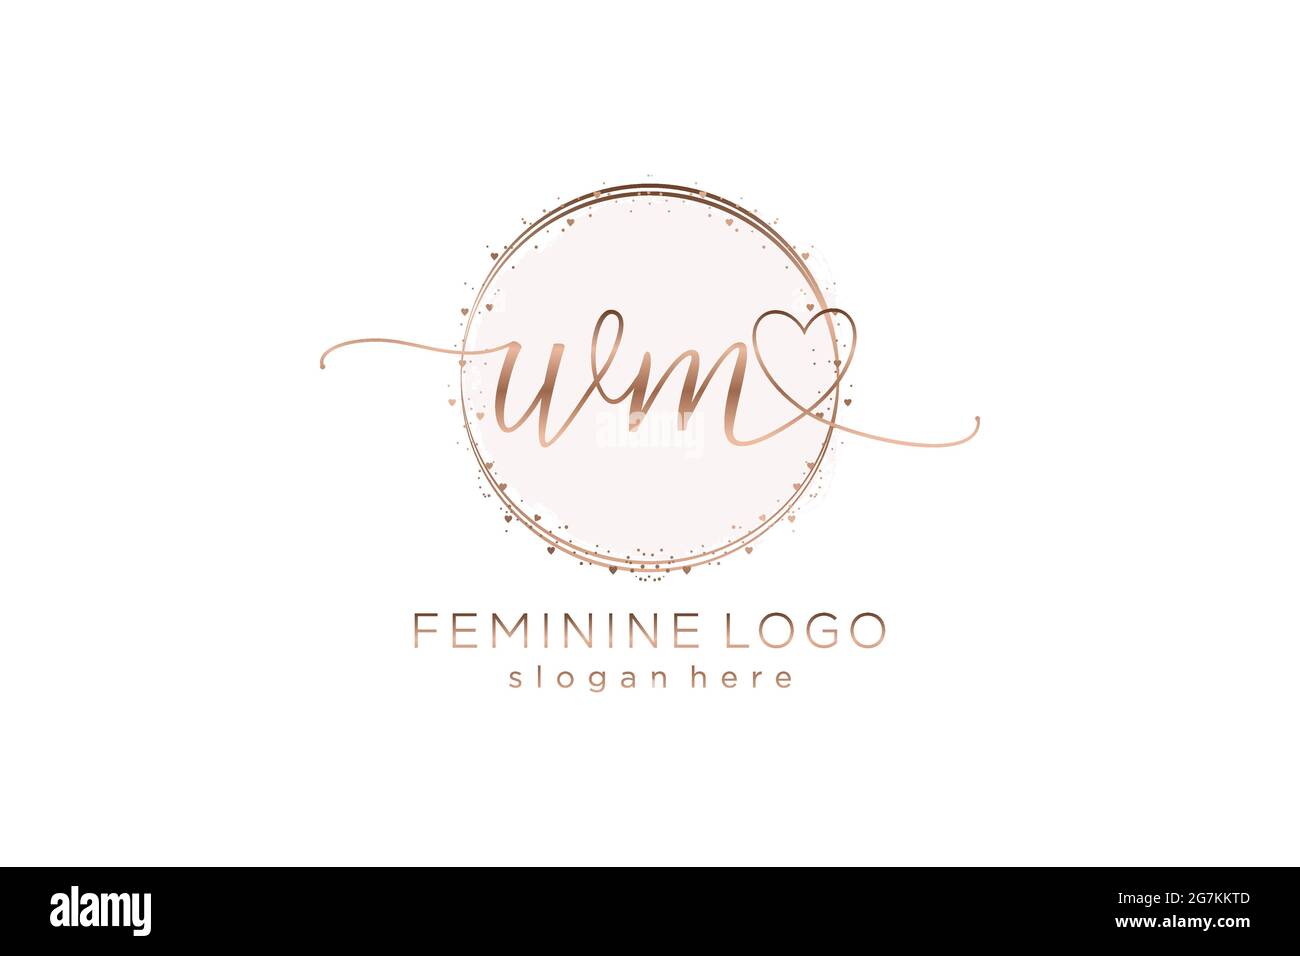 WM-Handschrift-Logo mit Kreis Vorlage Vektor-Logo der ersten Hochzeit, Mode, Blumen und botanischen mit kreativen Vorlage. Stock Vektor